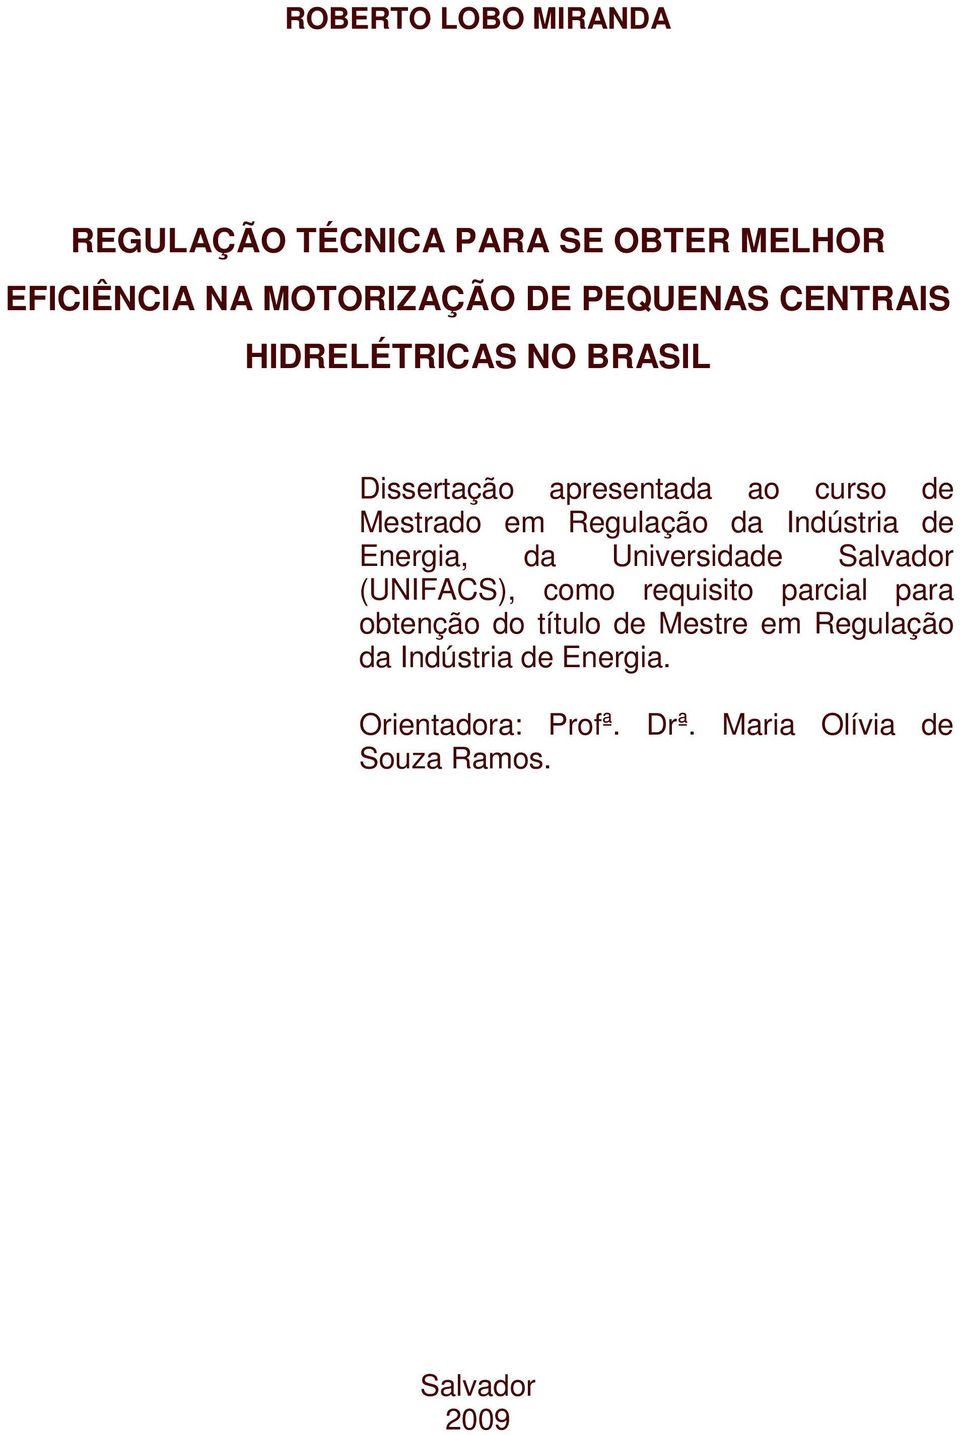 Indústria de Energia, da Universidade Salvador (UNIFACS), como requisito parcial para obtenção do